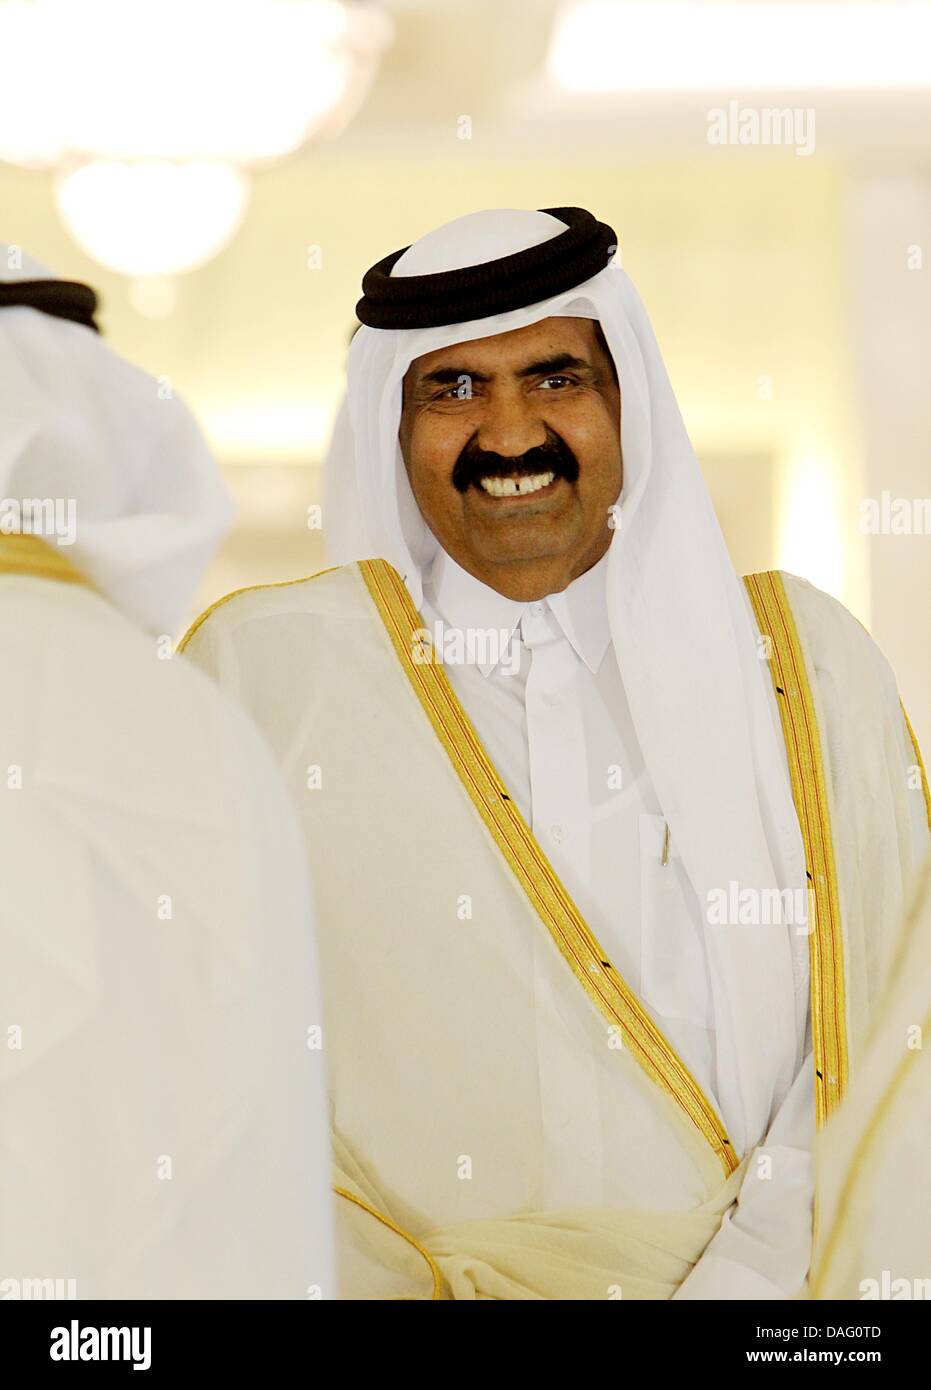 sheikh-hamad-bin-khalifa-al-thani-emir-of-the-state-of-qatar-smiles-DAG0TD.jpg